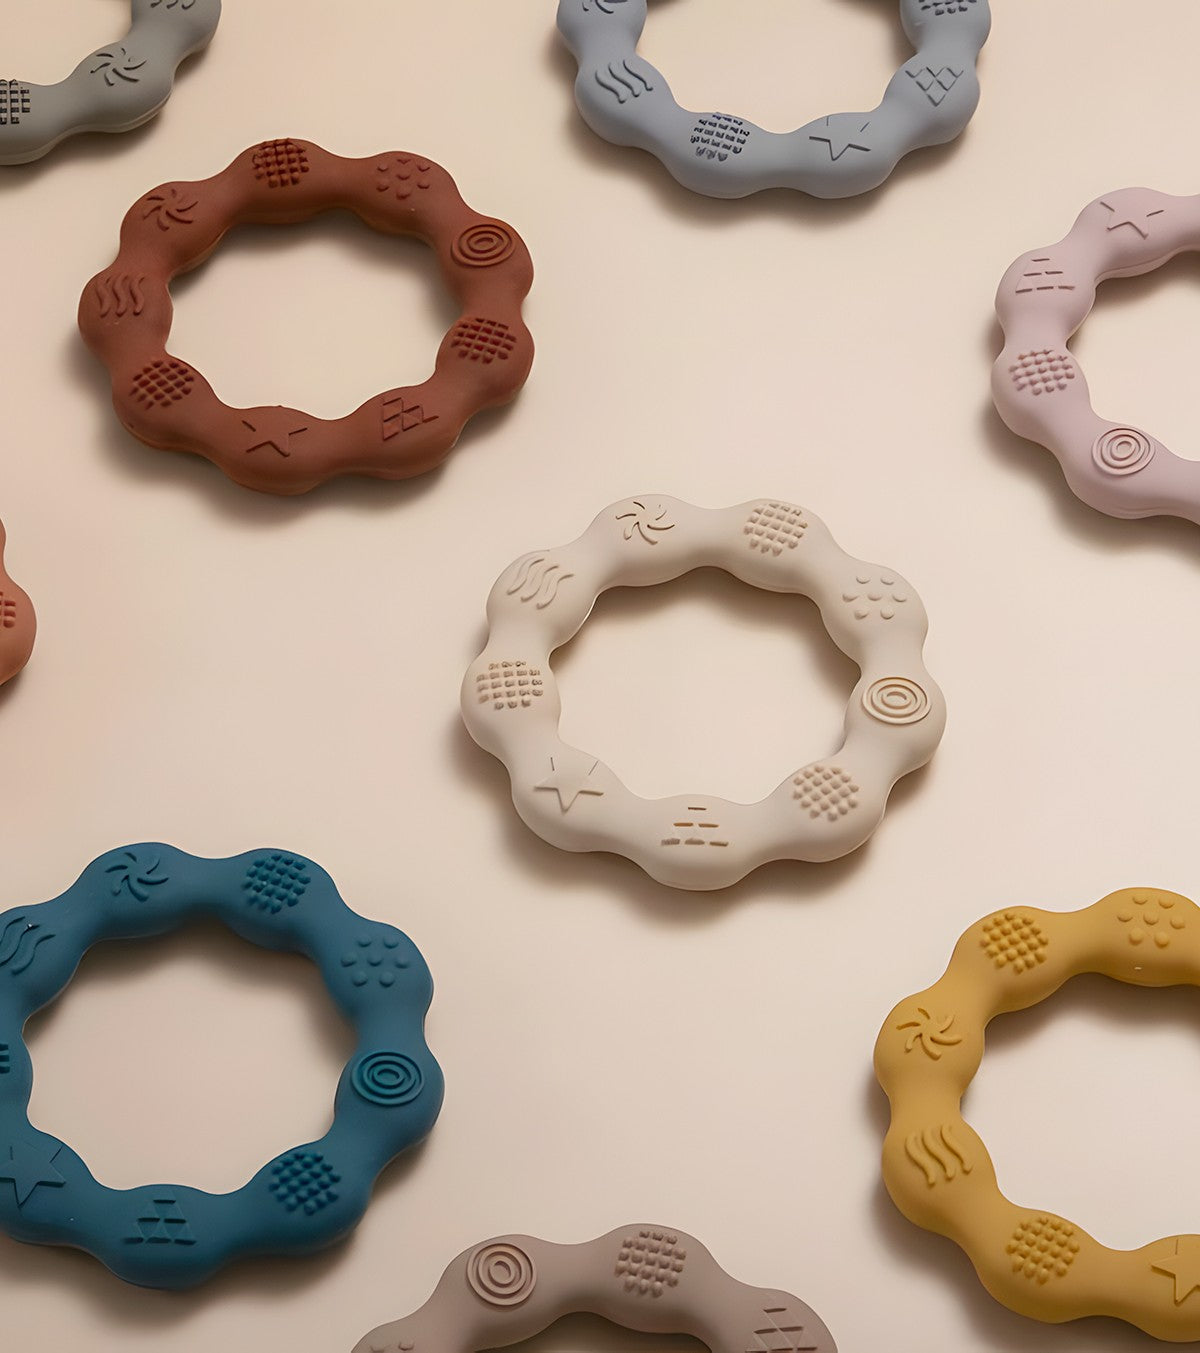 Set di 2 anelli per dentizione in silicone - terracotta/sabbia